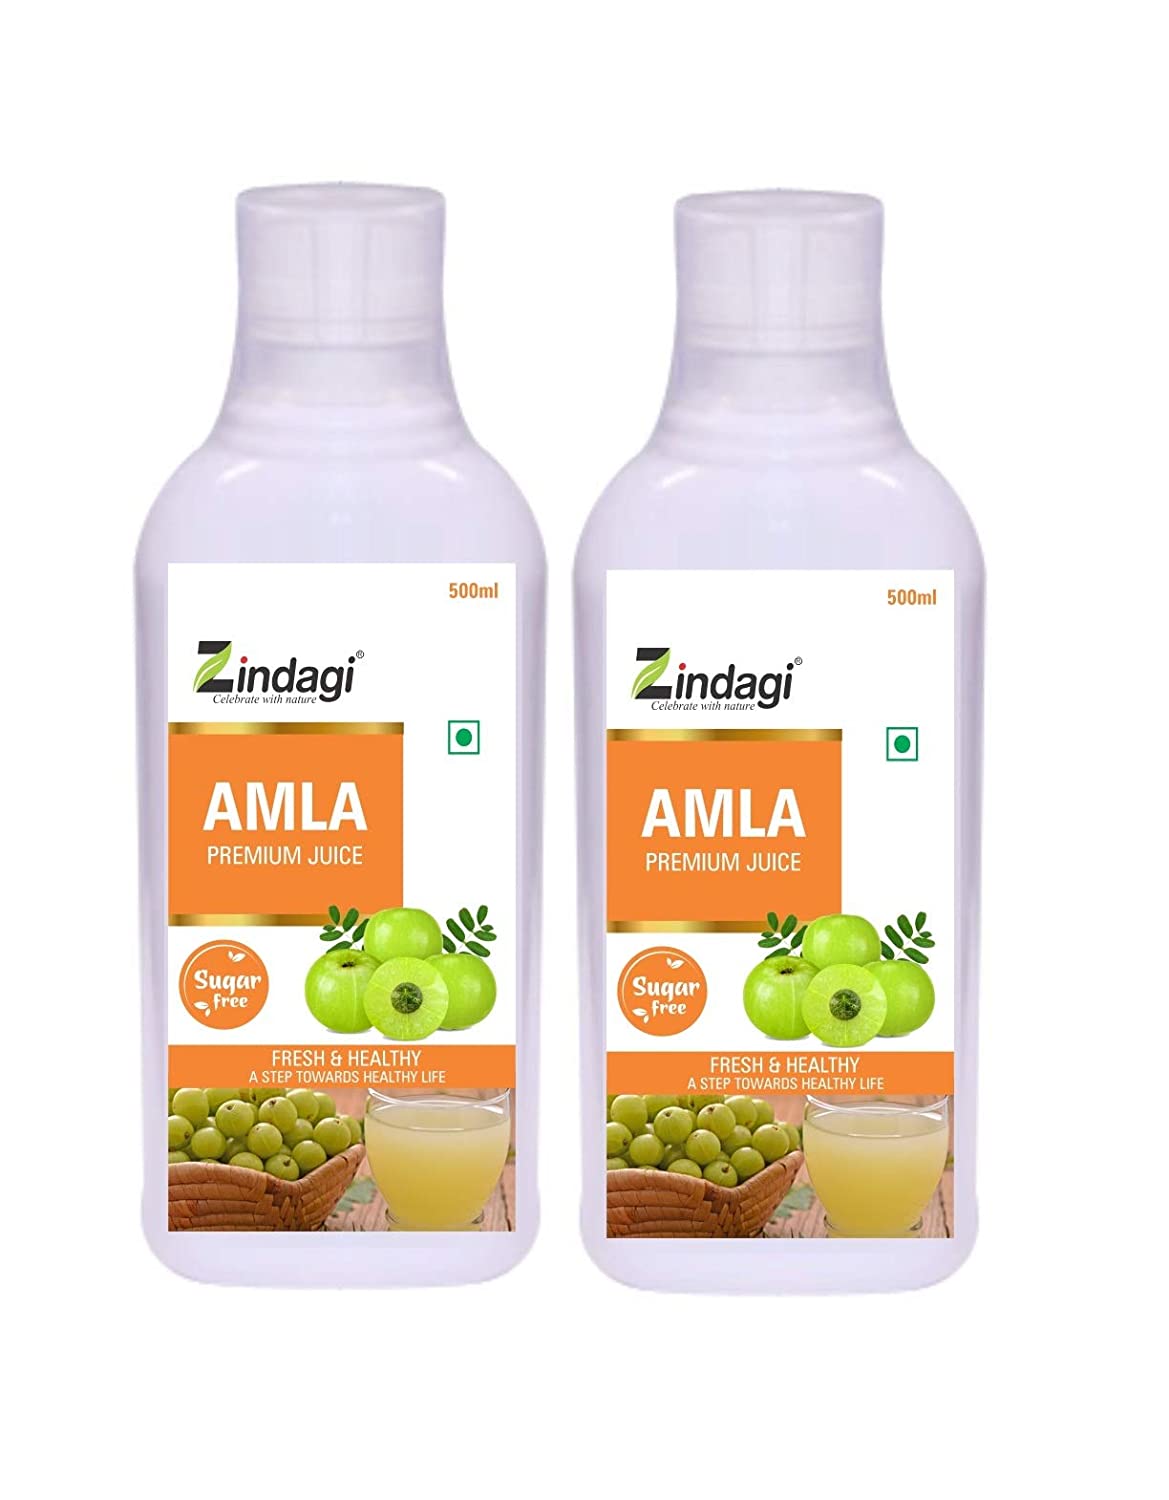 Buy Zindagi Pure Amla Juice - Natural Minerals & Vitamins - Sugar-Free Herbal Health Drink (1000 ml) at Best Price Online